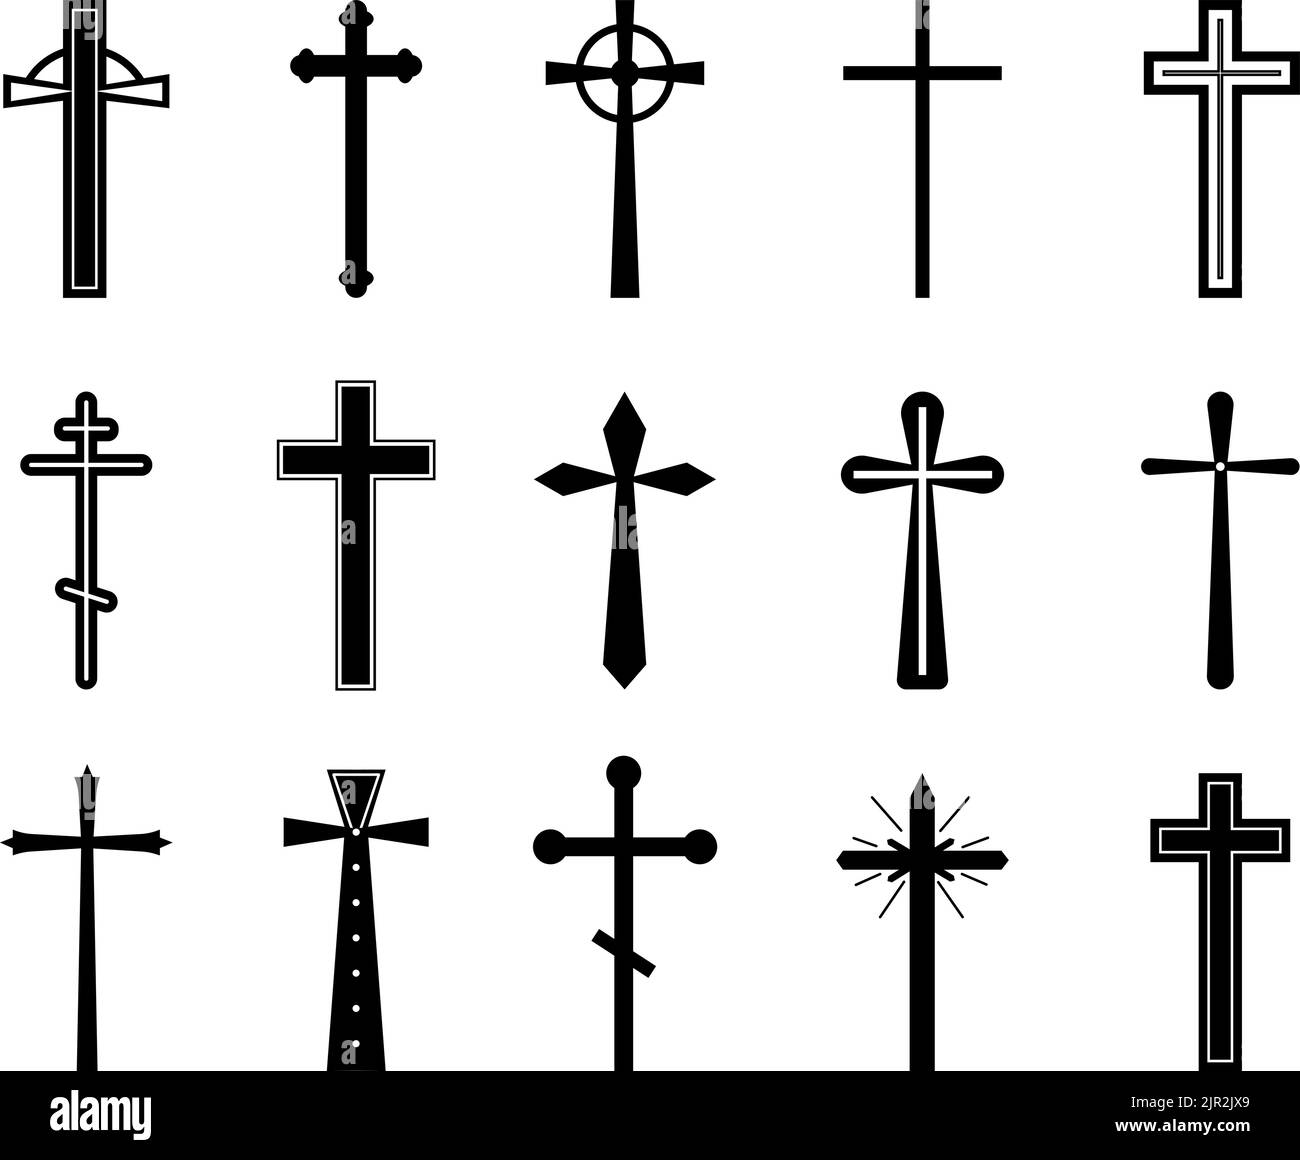 Croce cristiana set. Croci della chiesa cattolica, silhouette del crocifisso. Oggetti grafici gotici. Religione ortodossa o battesimo semplice decente vettore santo Illustrazione Vettoriale